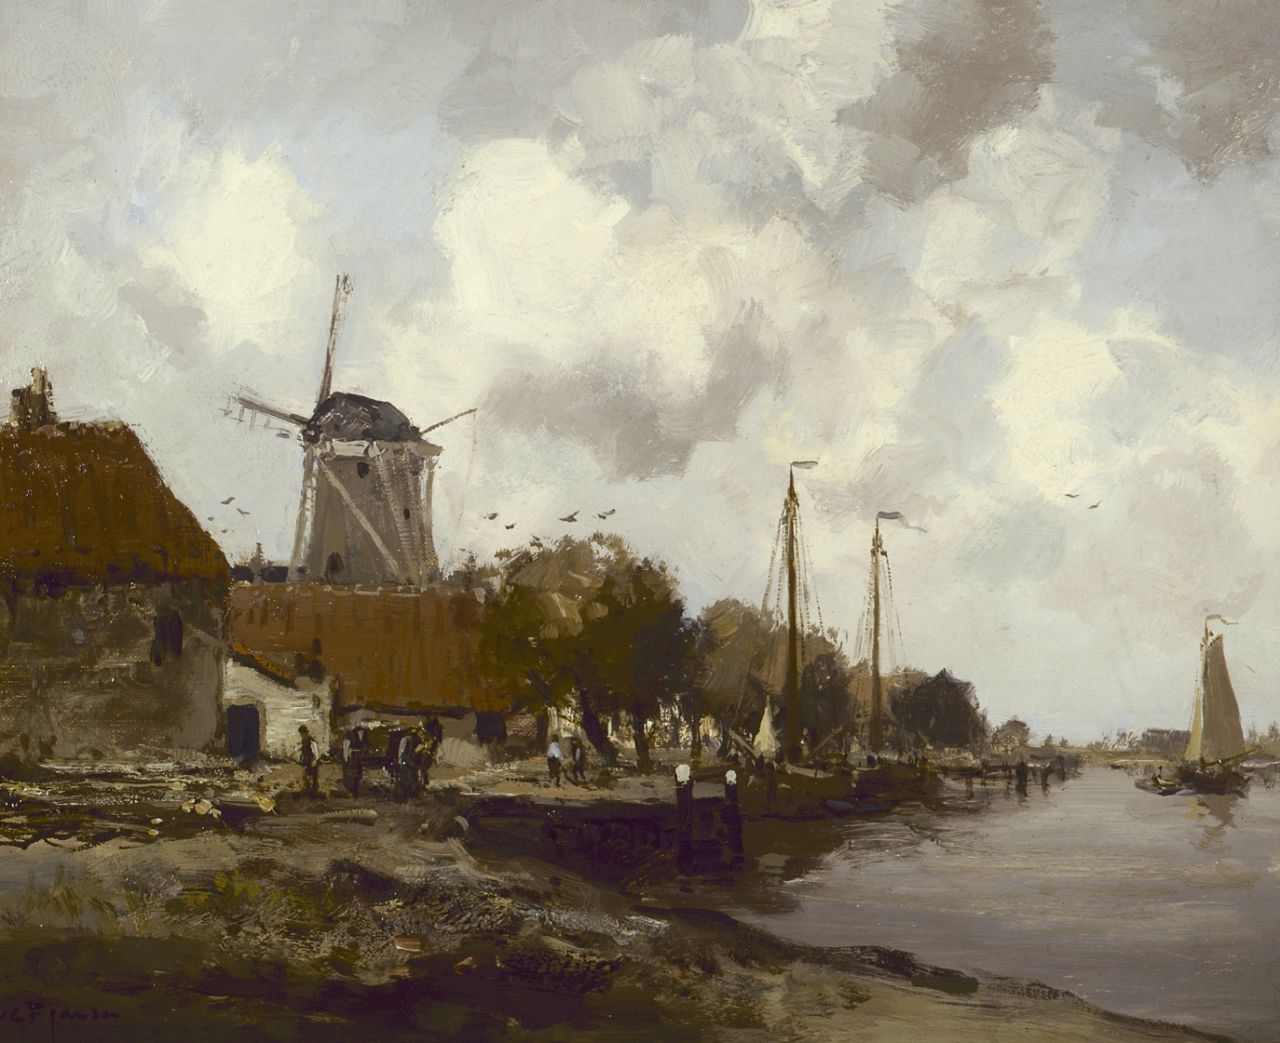 Jansen W.G.F.  | 'Willem' George Frederik Jansen, Stadje aan de Zuiderzee, olieverf op doek 41,0 x 51,0 cm, gesigneerd linksonder